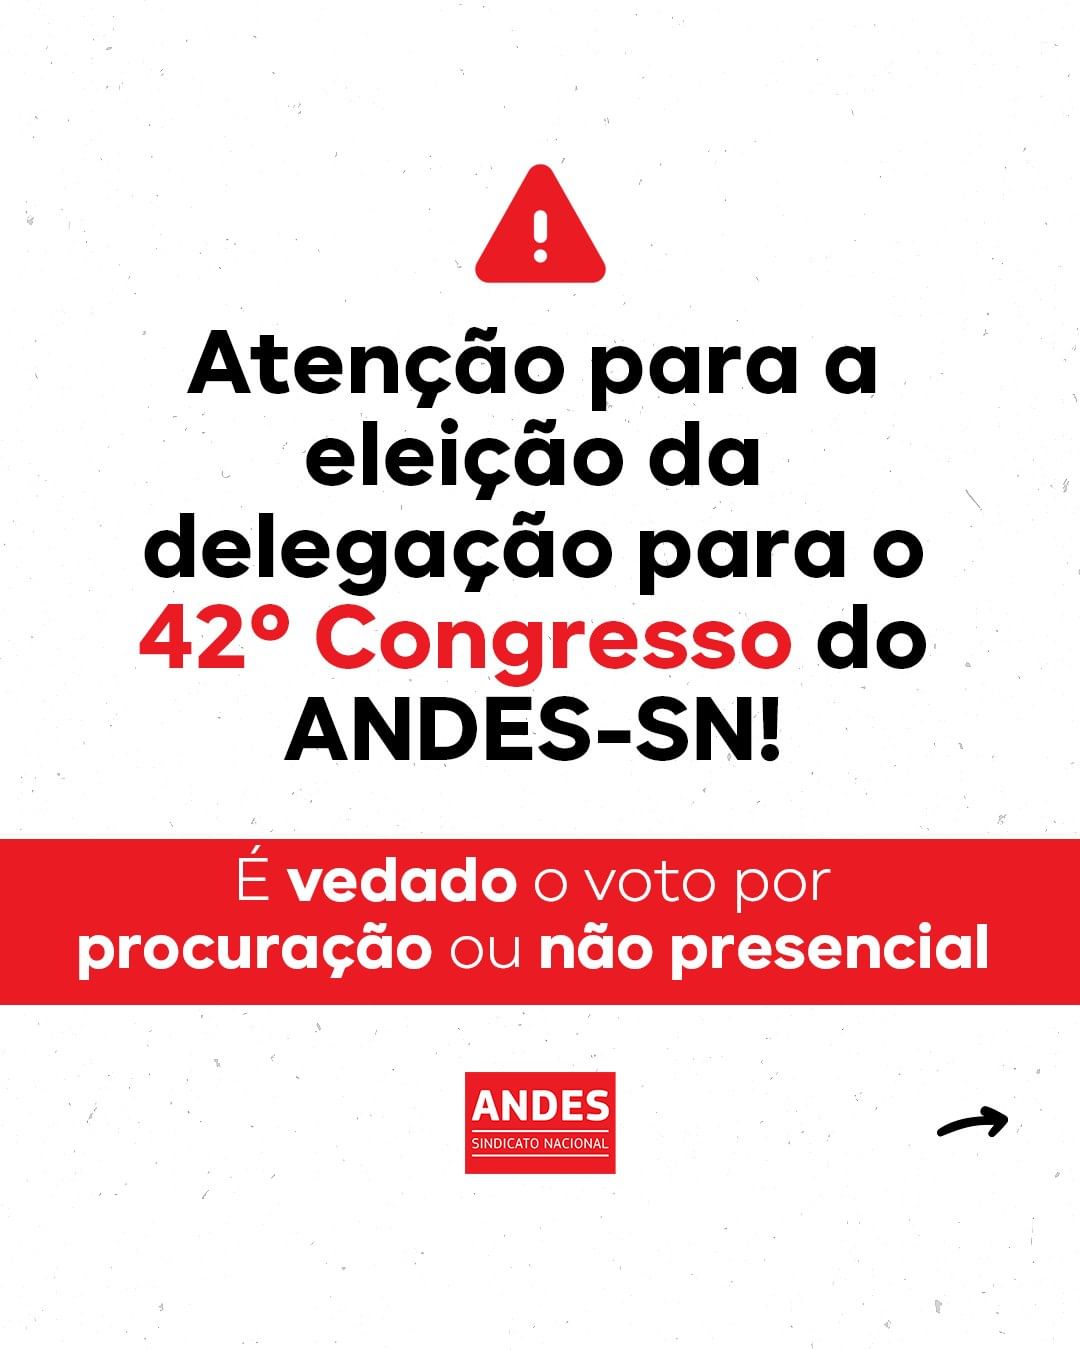 Credenciamento prévio ao 42º Congresso do ANDES-SN deve ser feito até 6 de fevereiro